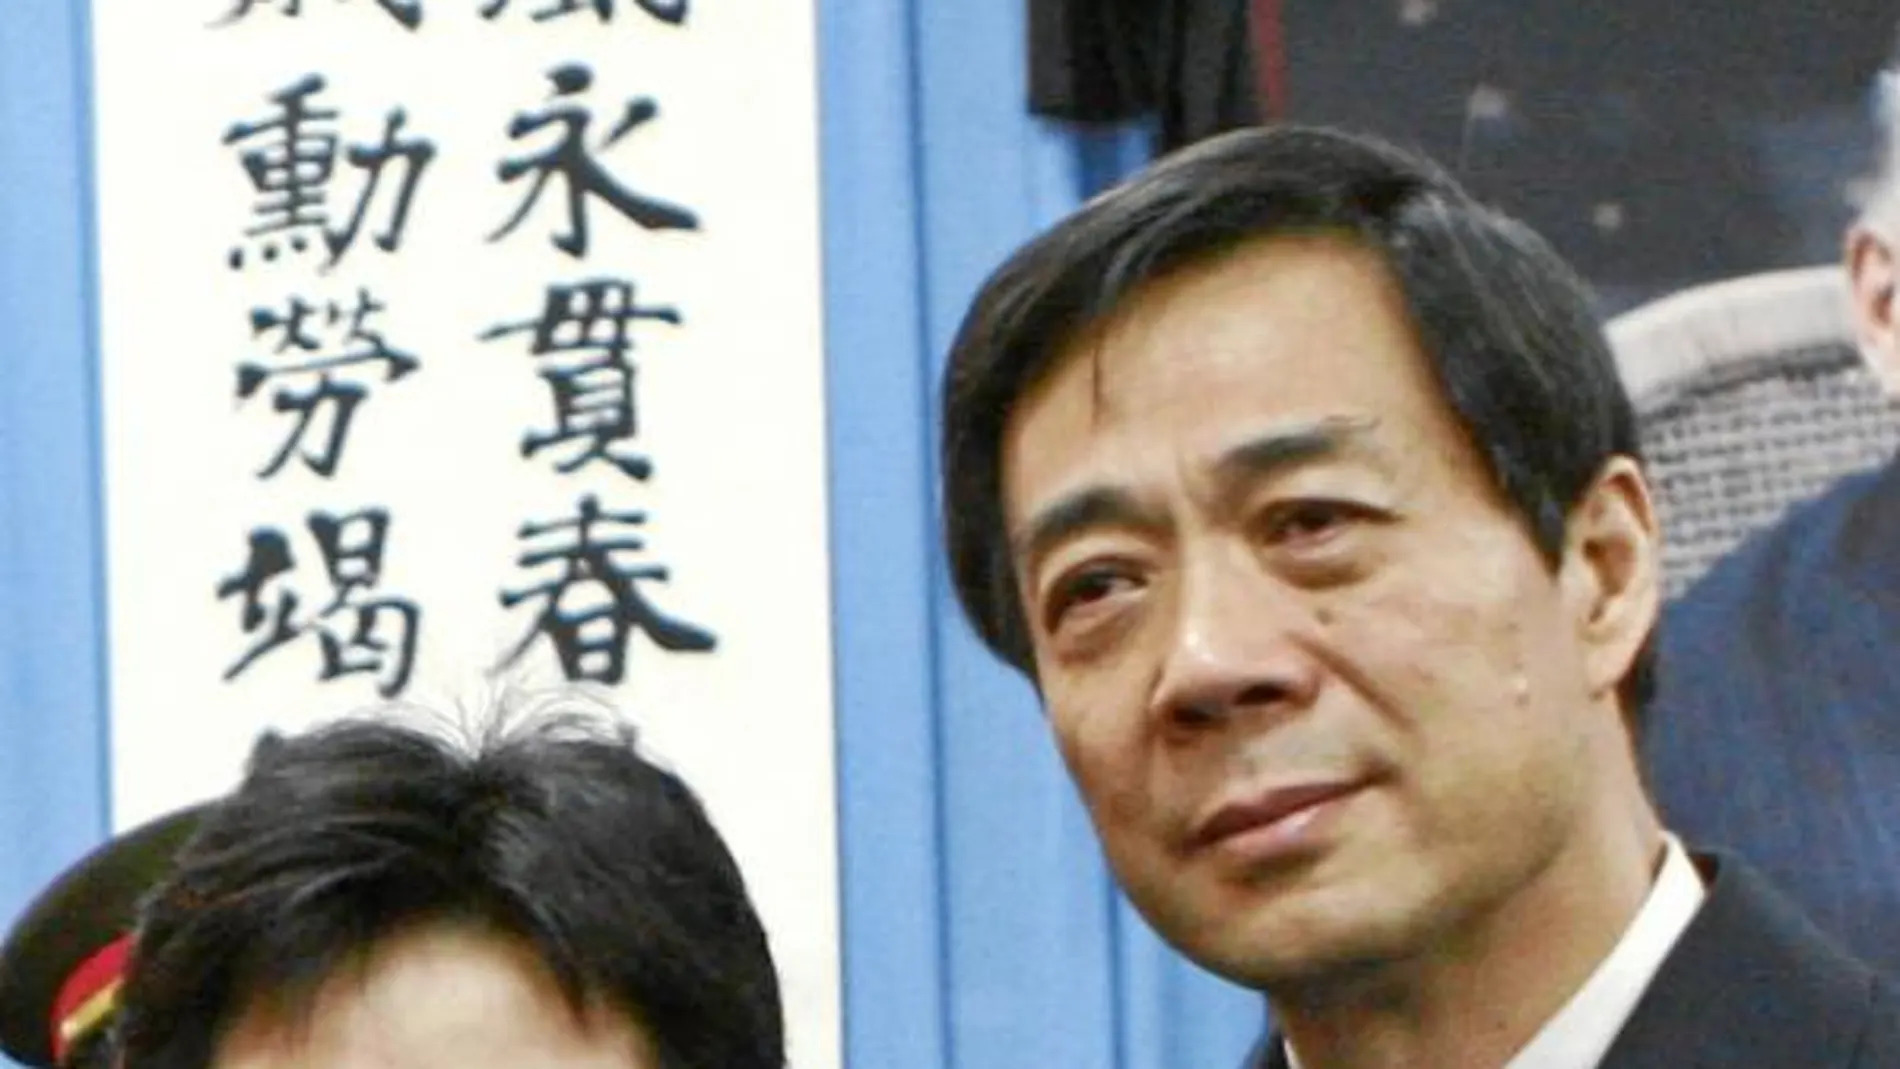 Gu Kailai y Bo Xilai formaban una de las parejas más envidiadas de China